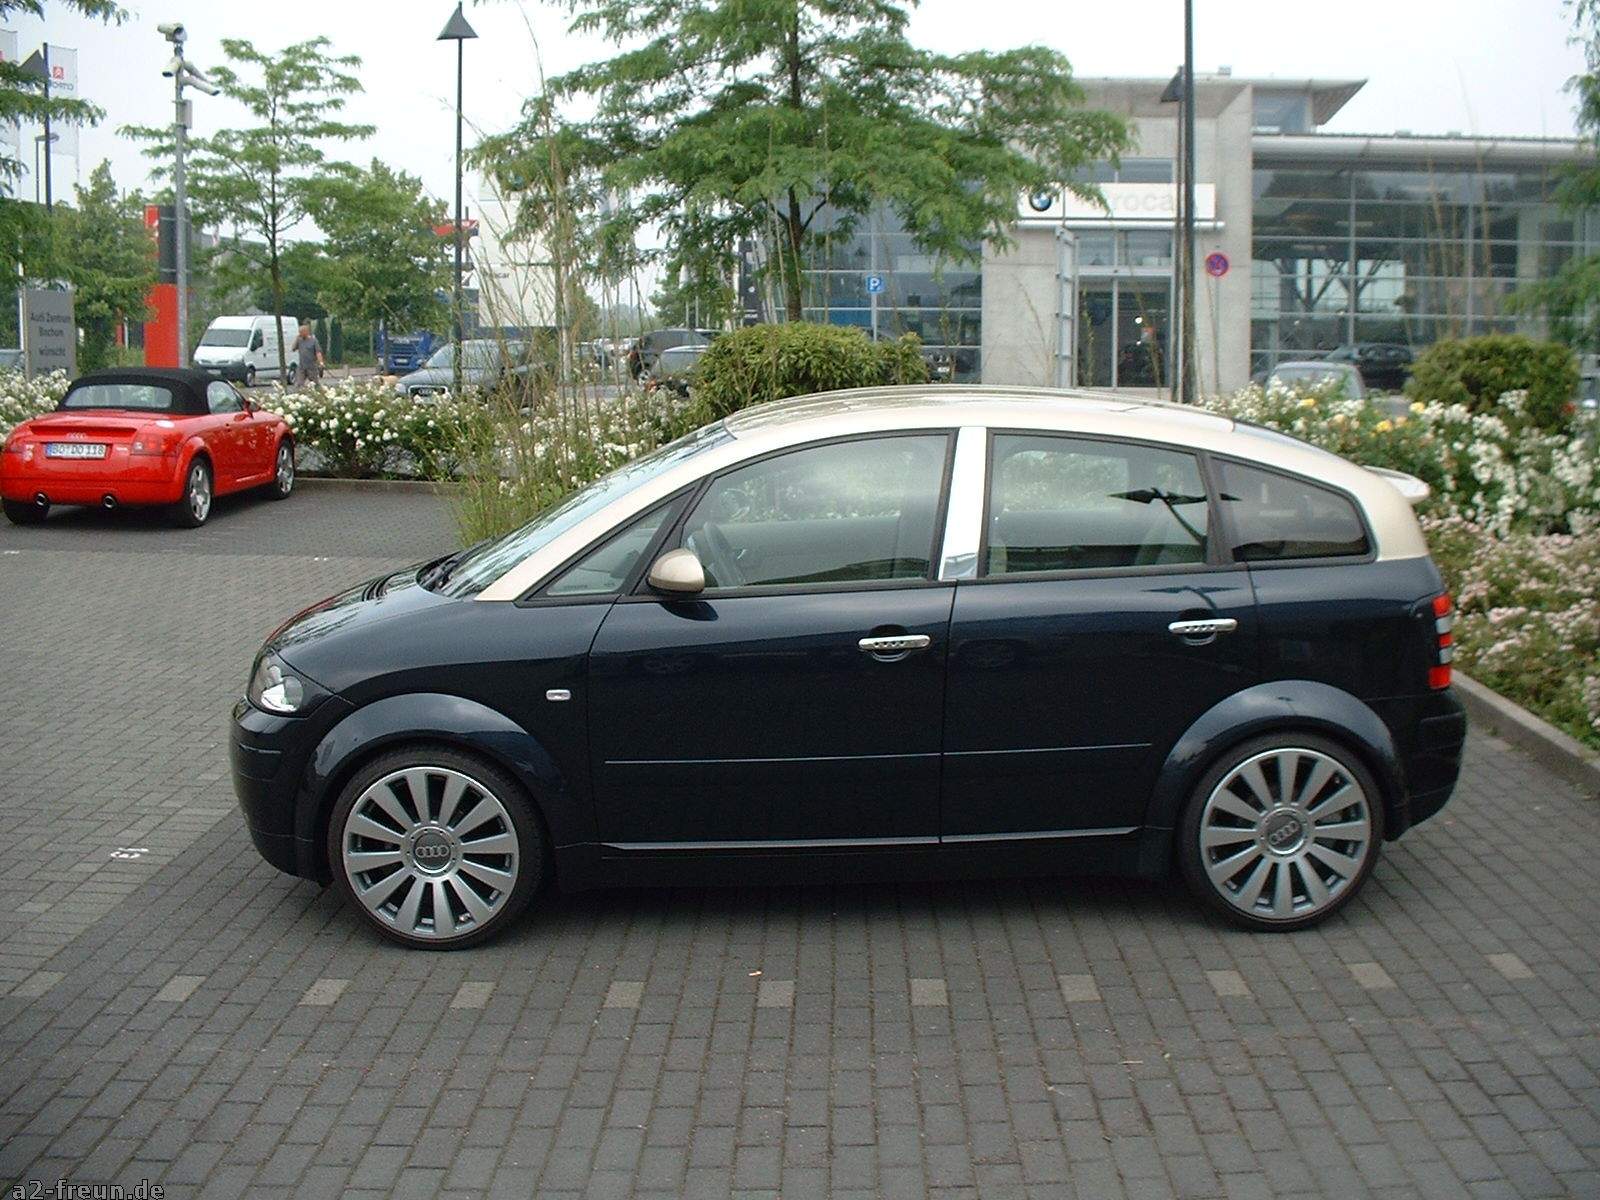 BILSTEIN B8 Komfort Federwegbegrenzer kürzen - Audi